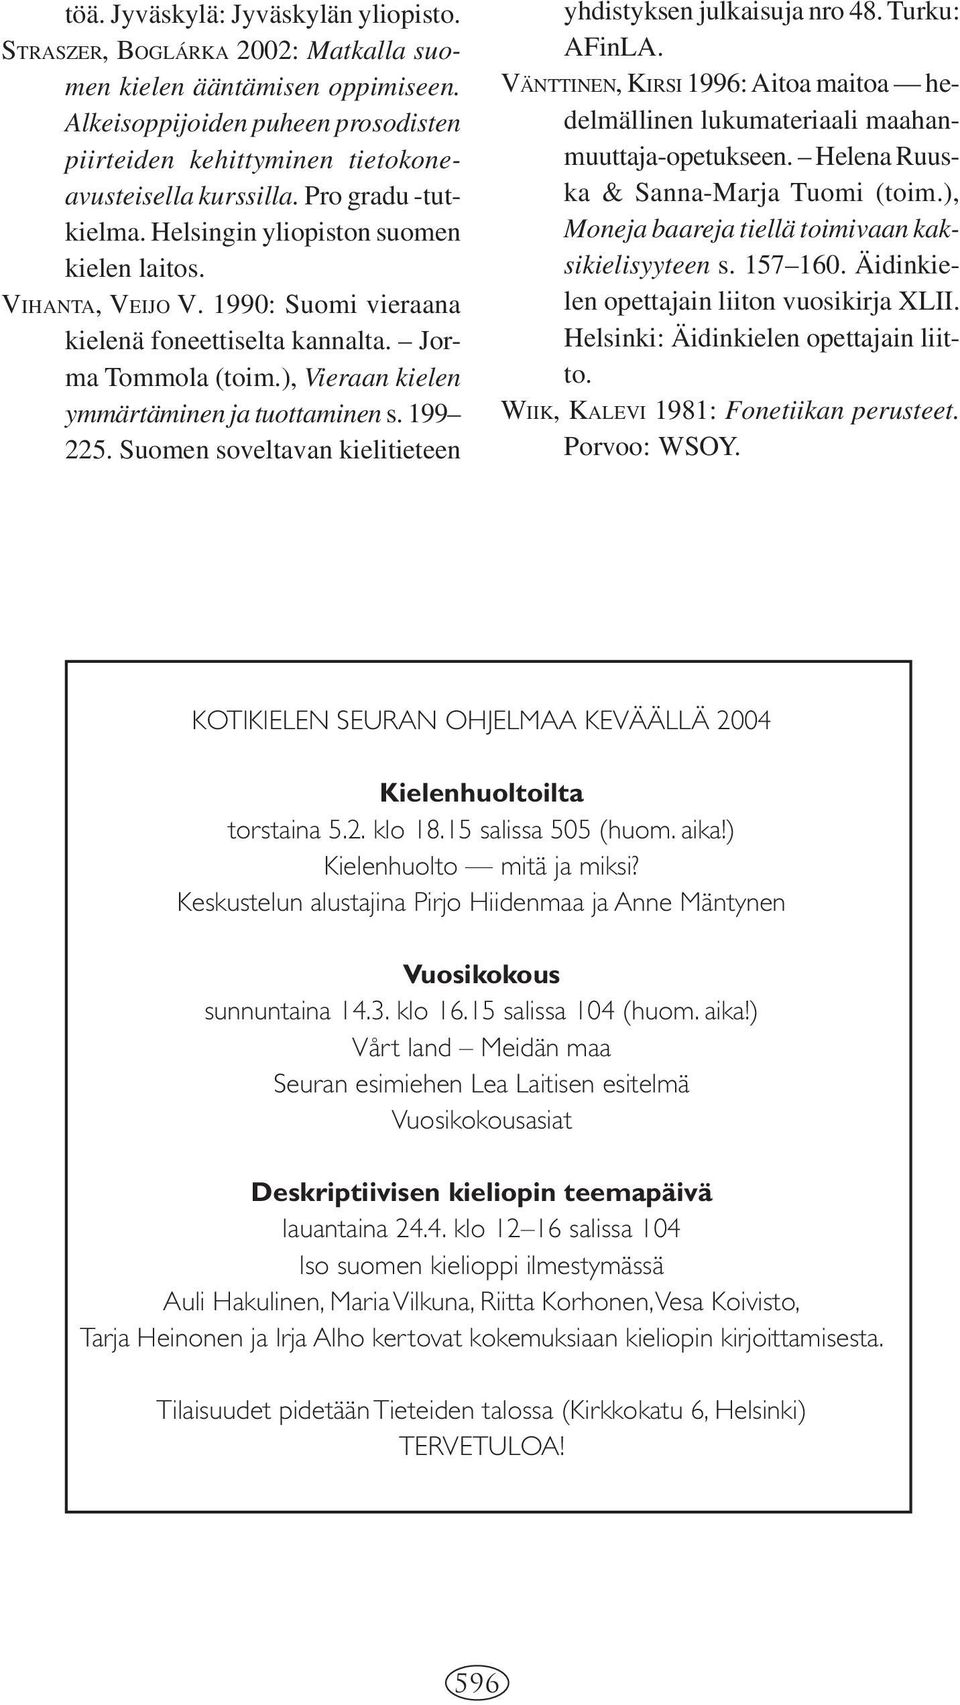 1990: Suomi vieraana kielenä foneettiselta kannalta. Jorma Tommola (toim.), Vieraan kielen ymmärtäminen ja tuottaminen s. 199 225. Suomen soveltavan kielitieteen yhdistyksen julkaisuja nro 48.